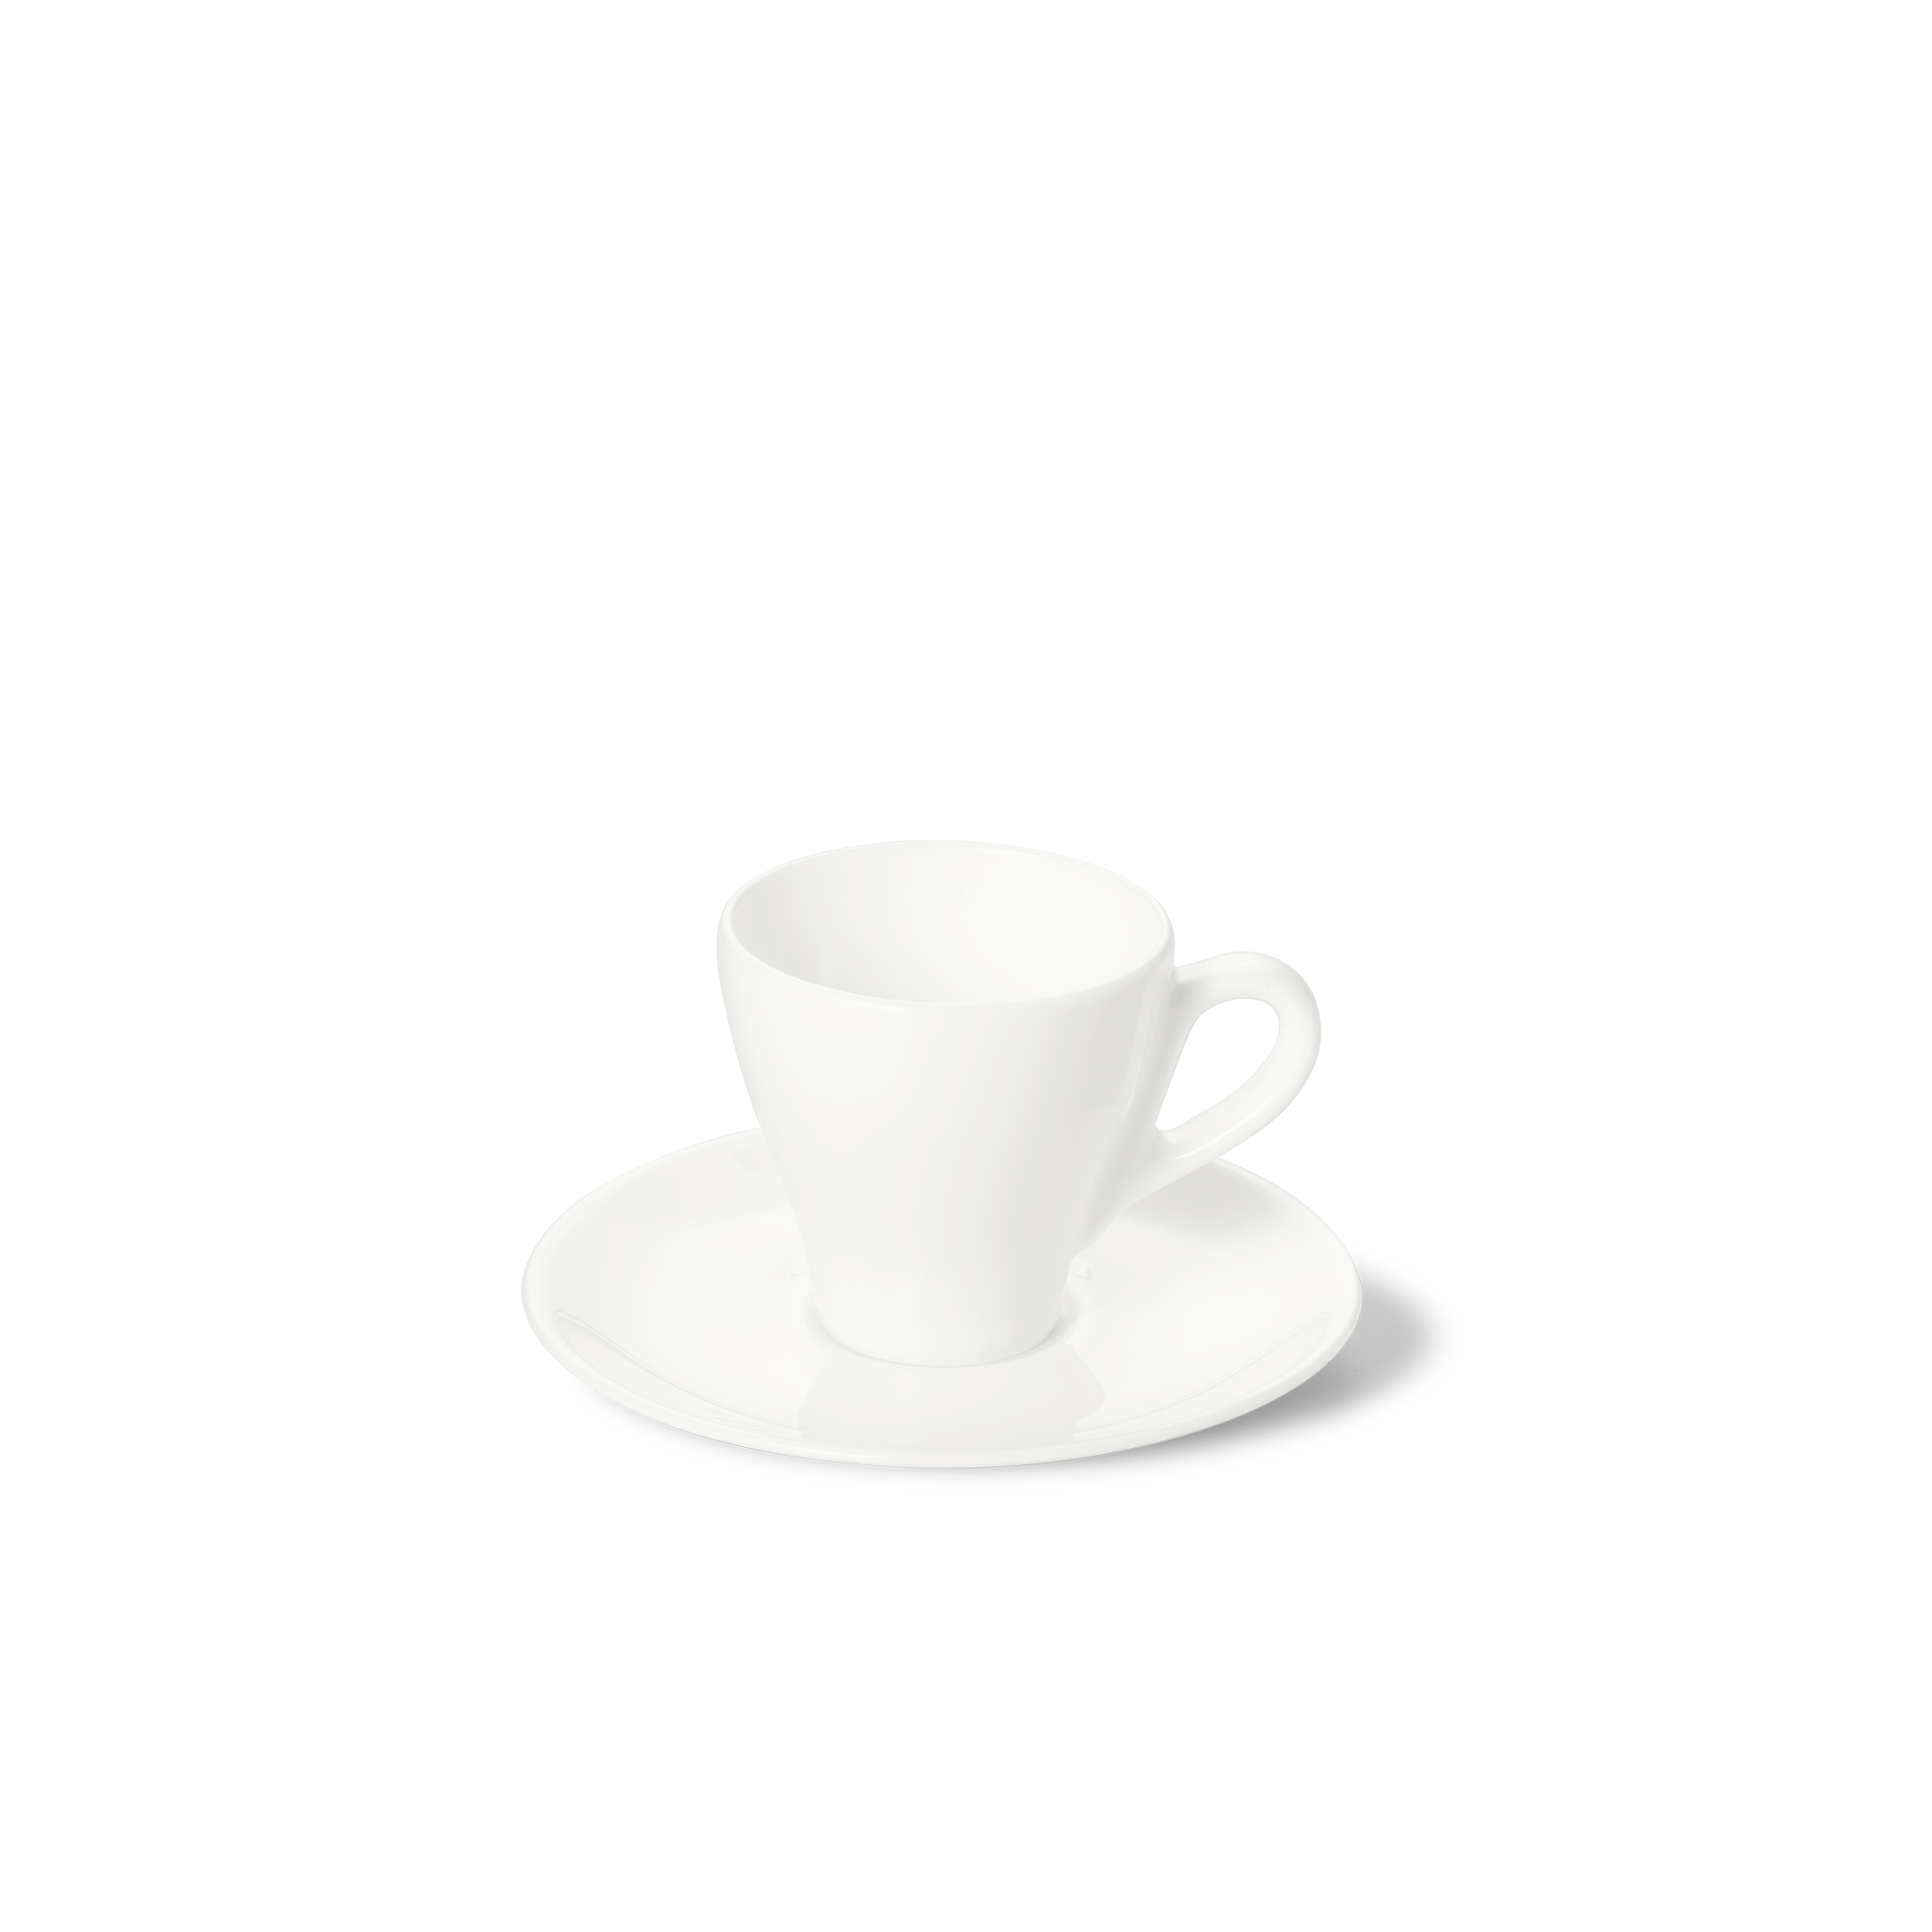 Classico espresso cup